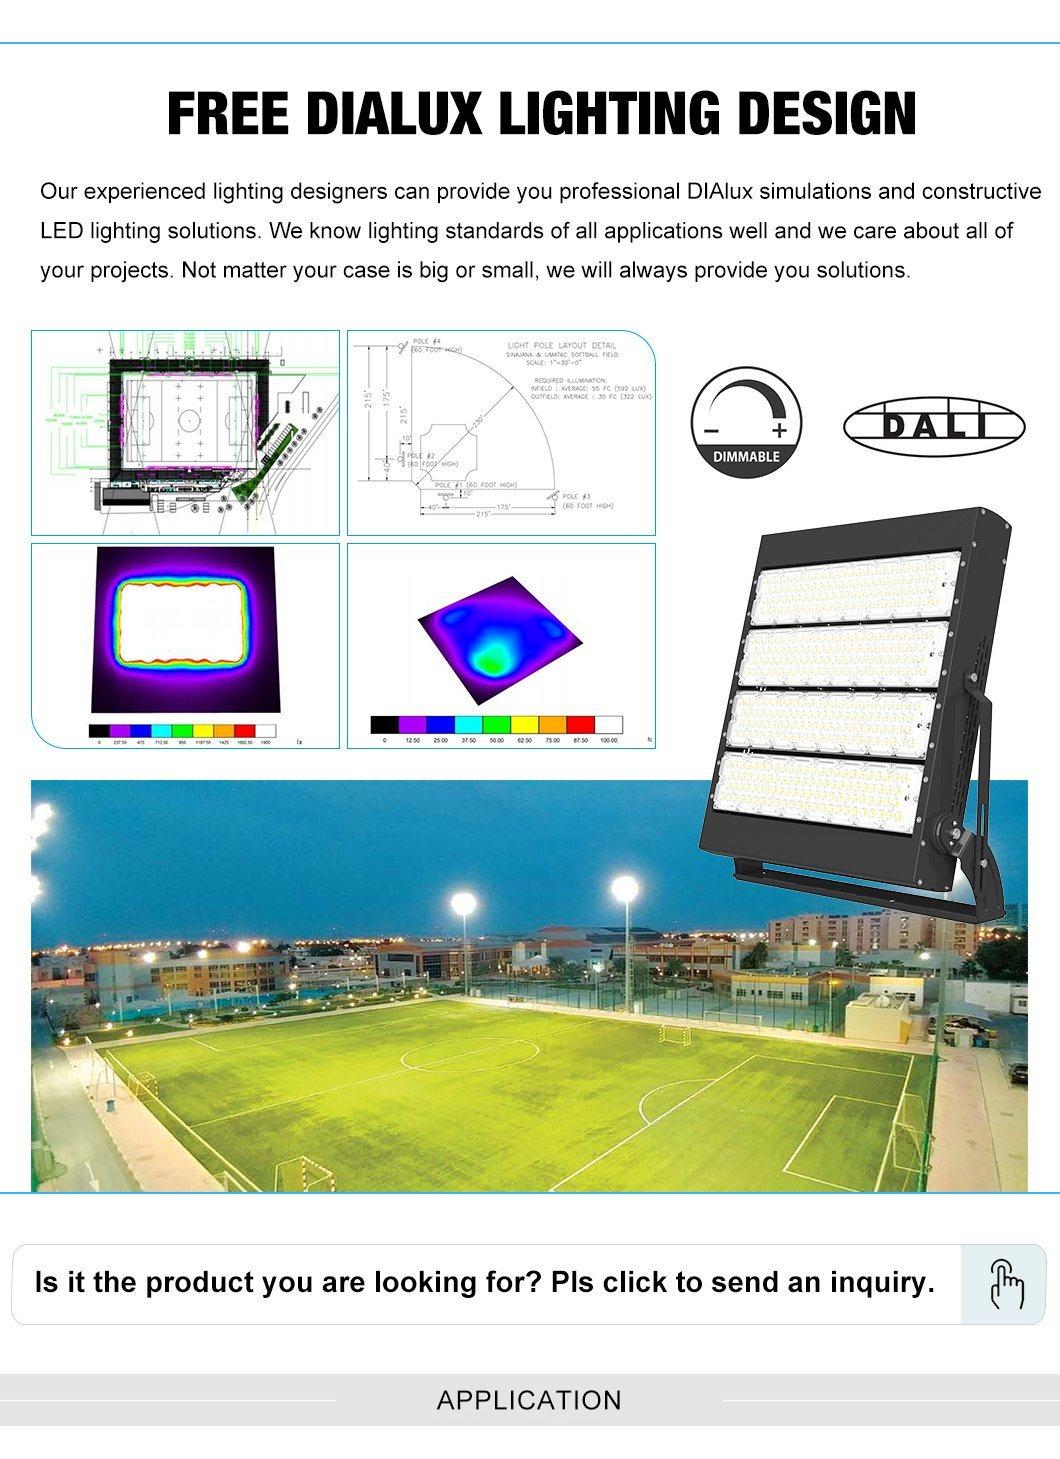 Top Sale Indoor Outdoor Light Stadium 1000W LED Flood Light Stadium with ETL Listed